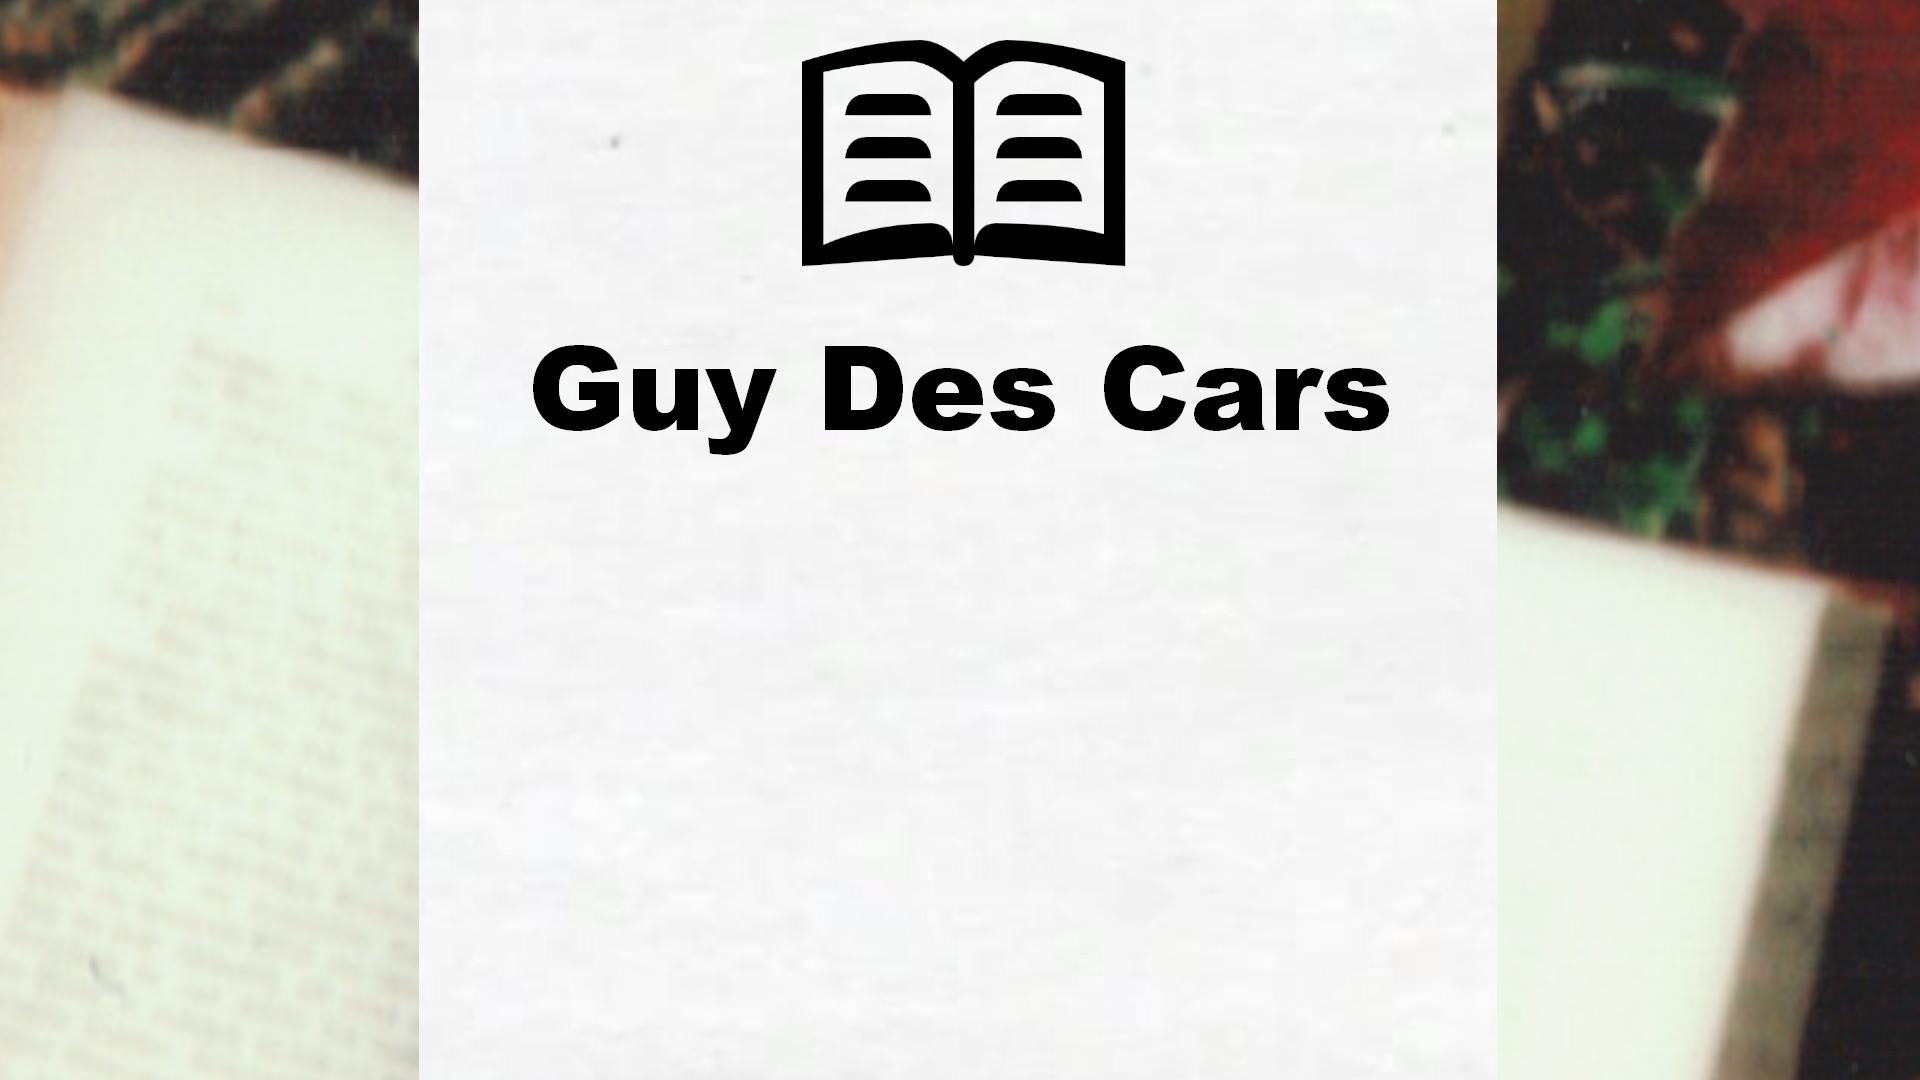 Livres de Guy Des Cars